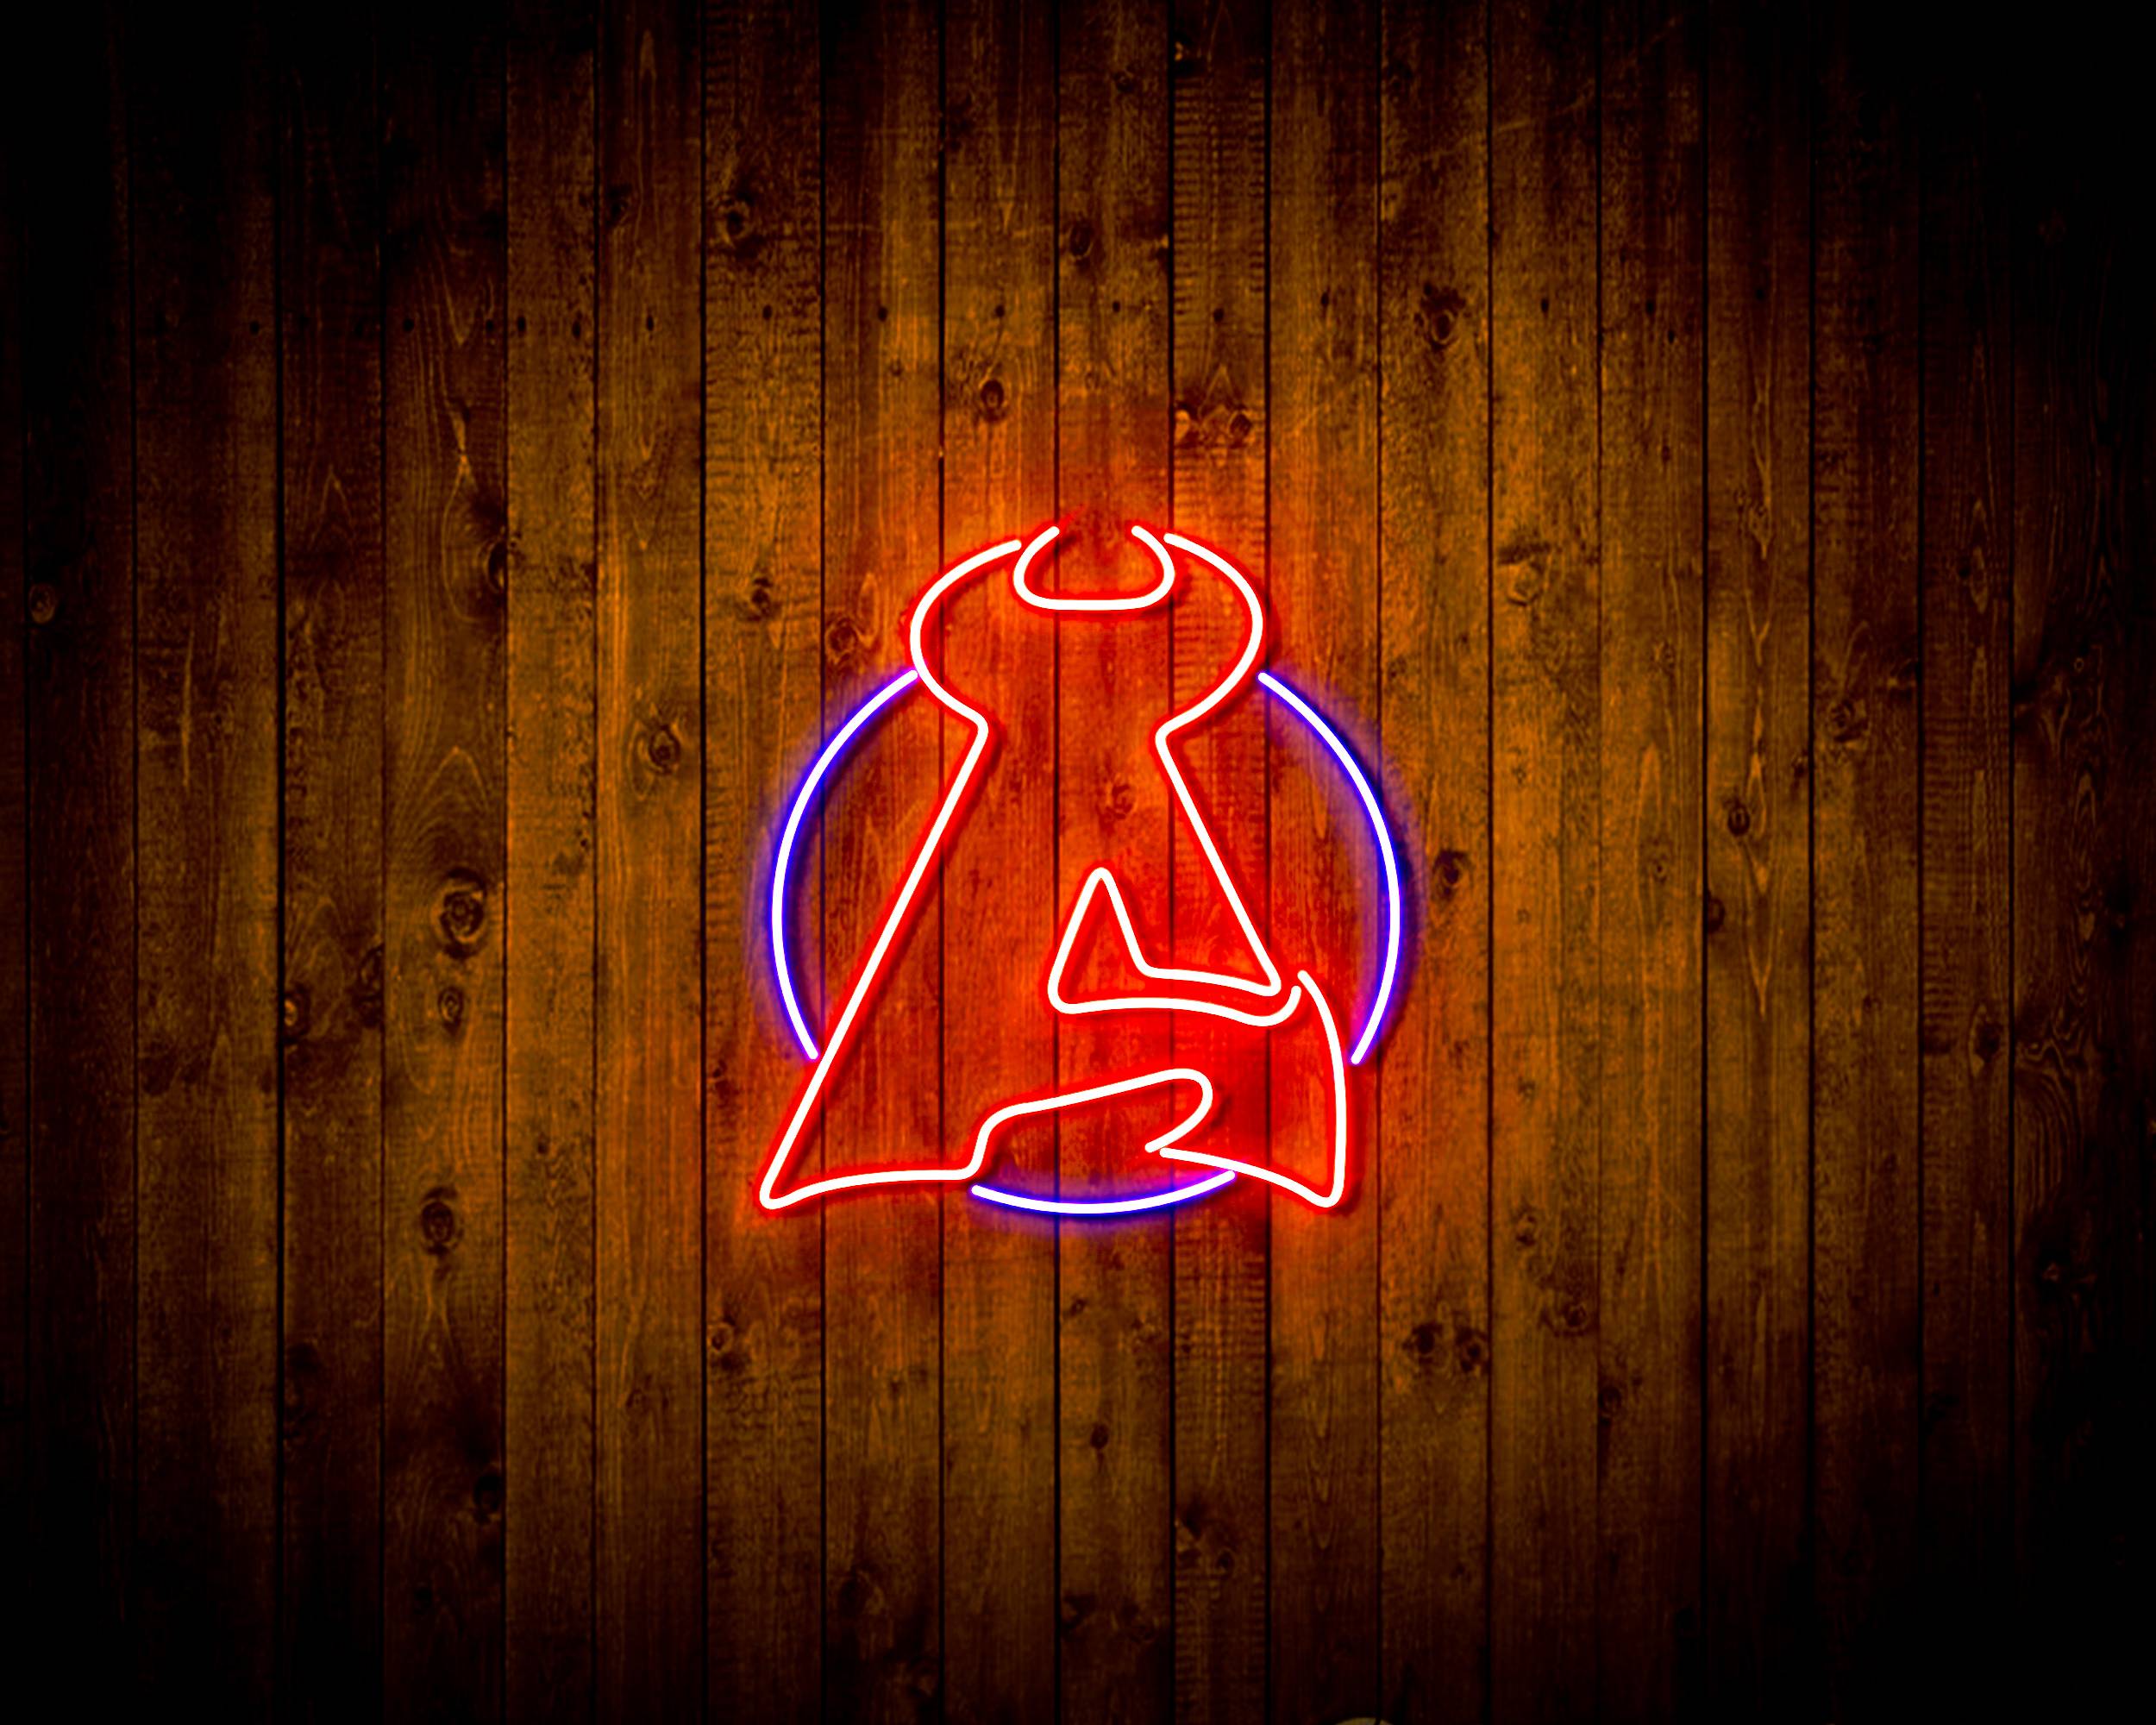 NHL New Jersey Devils Bar Neon Flex LED Sign